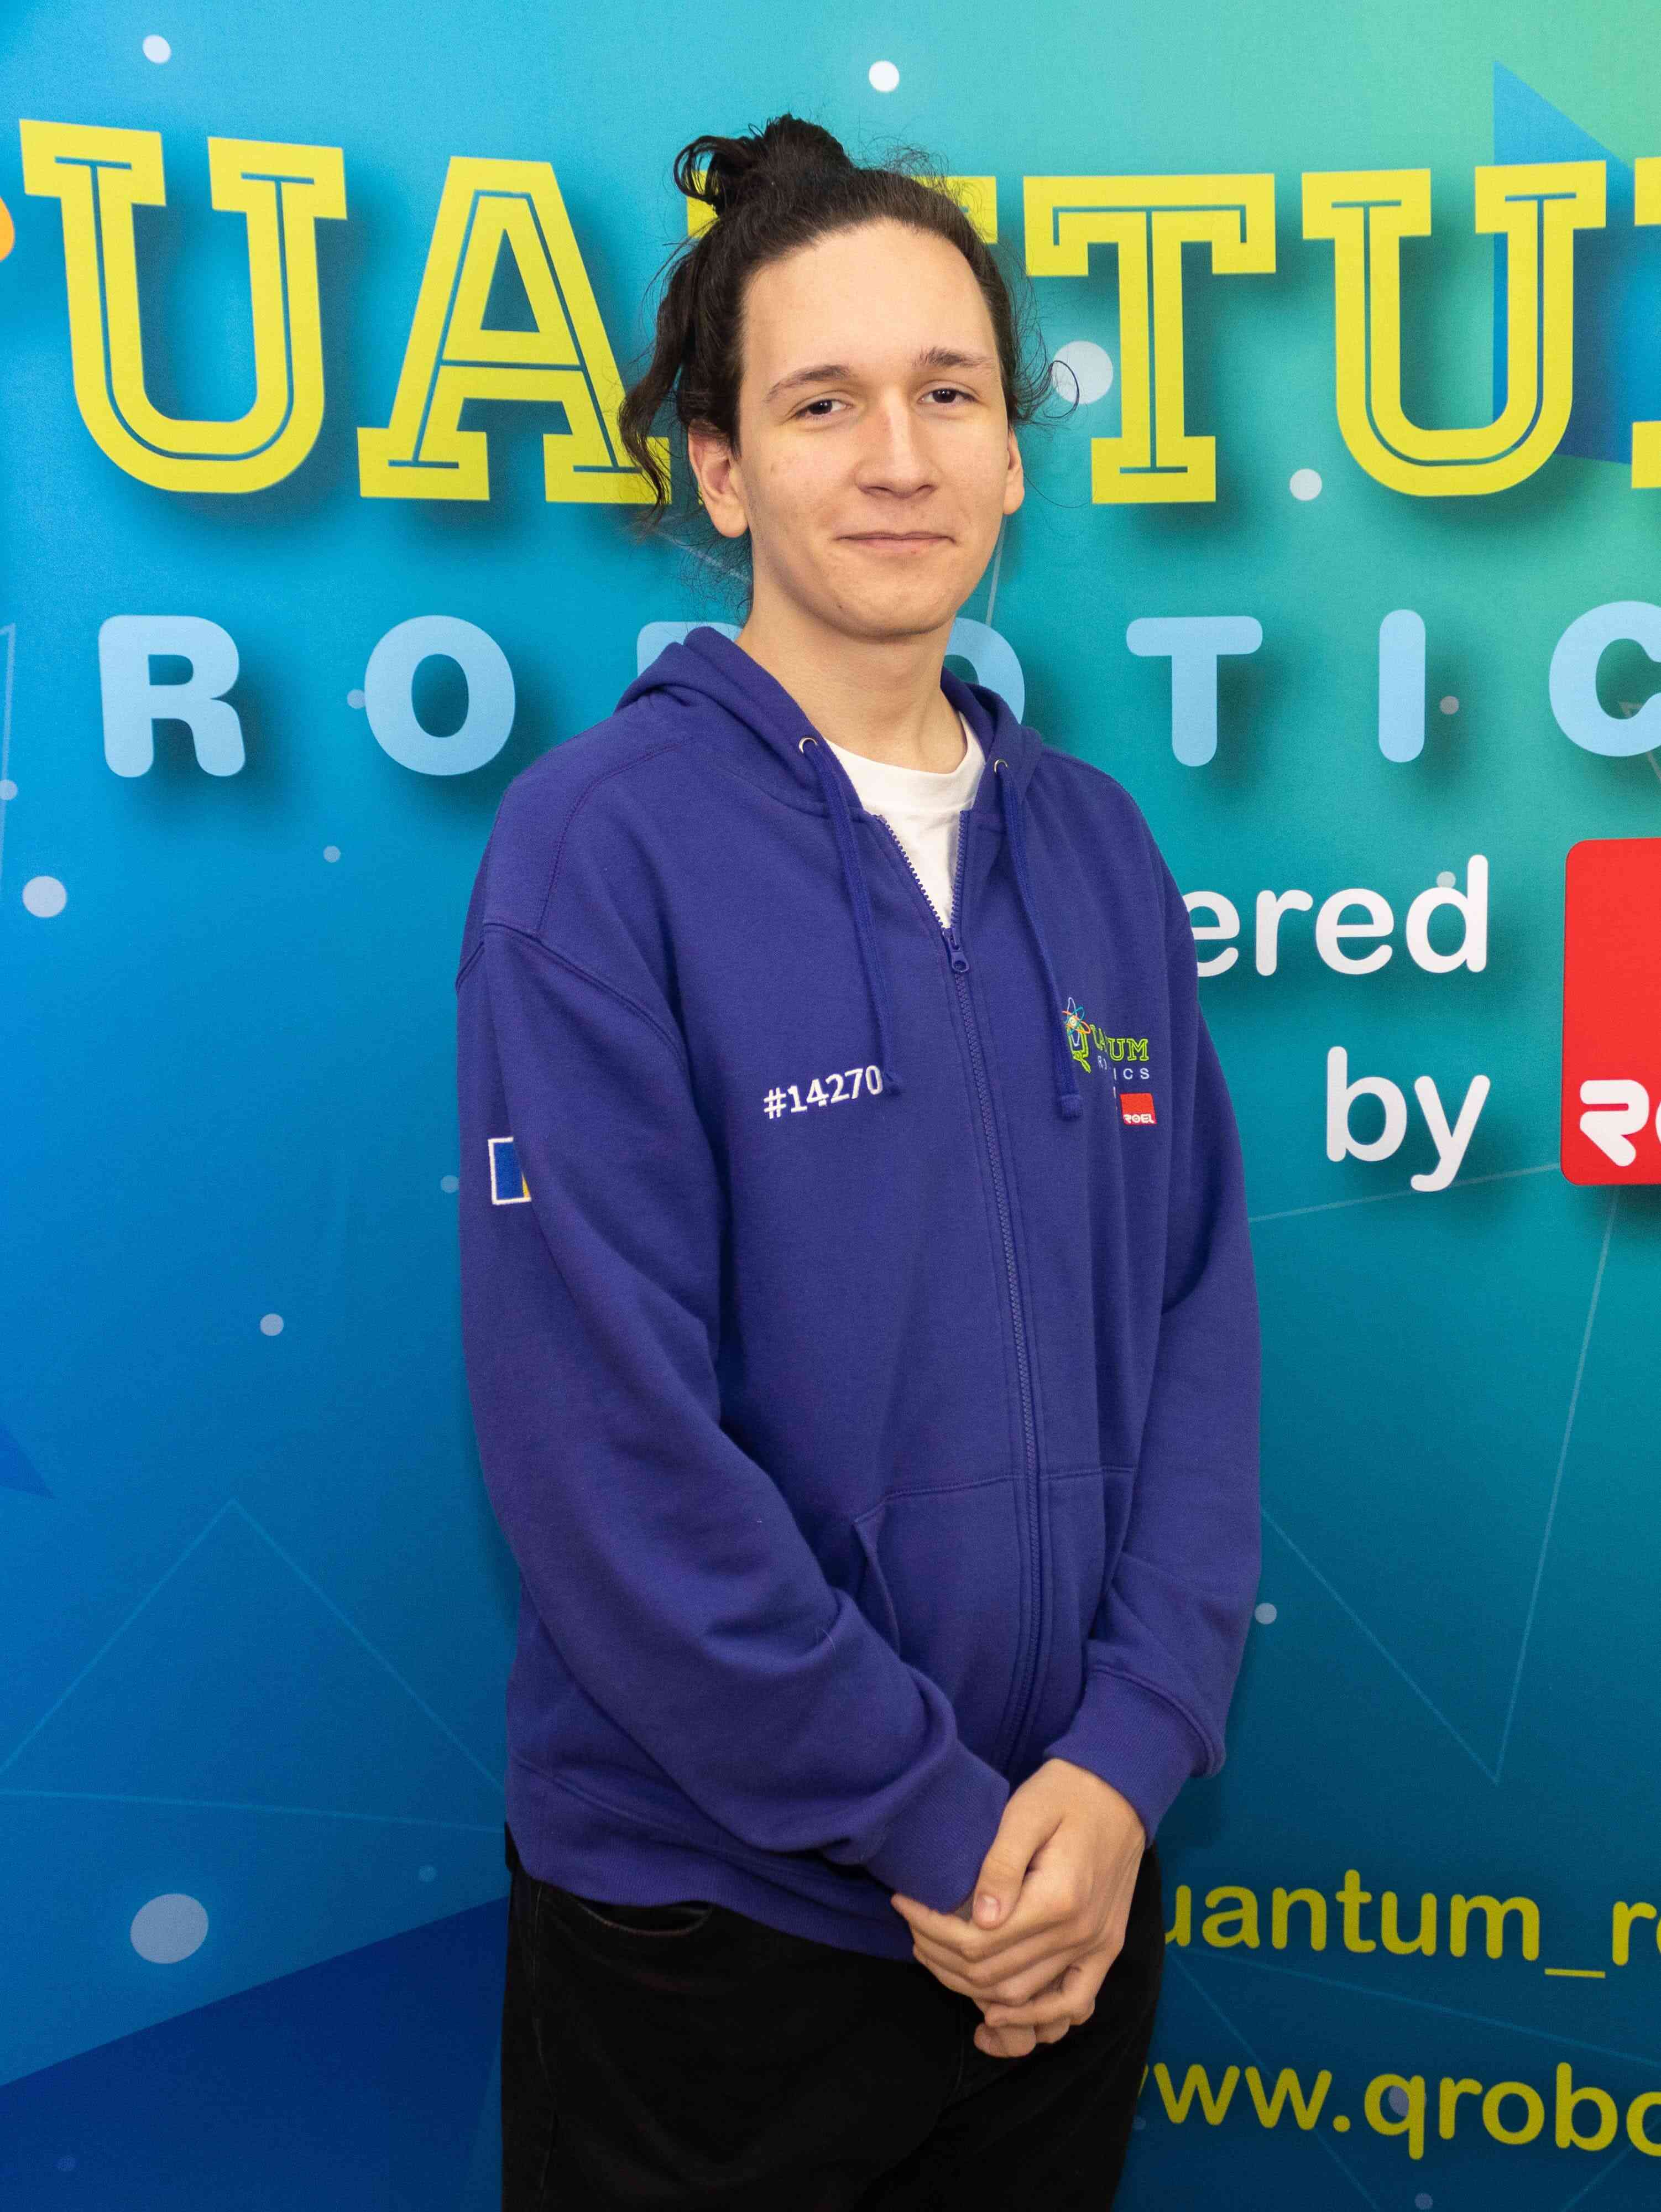 Quantum-Robotics-FTC-FIRST-competiton-team-members-David-Ghiberdic